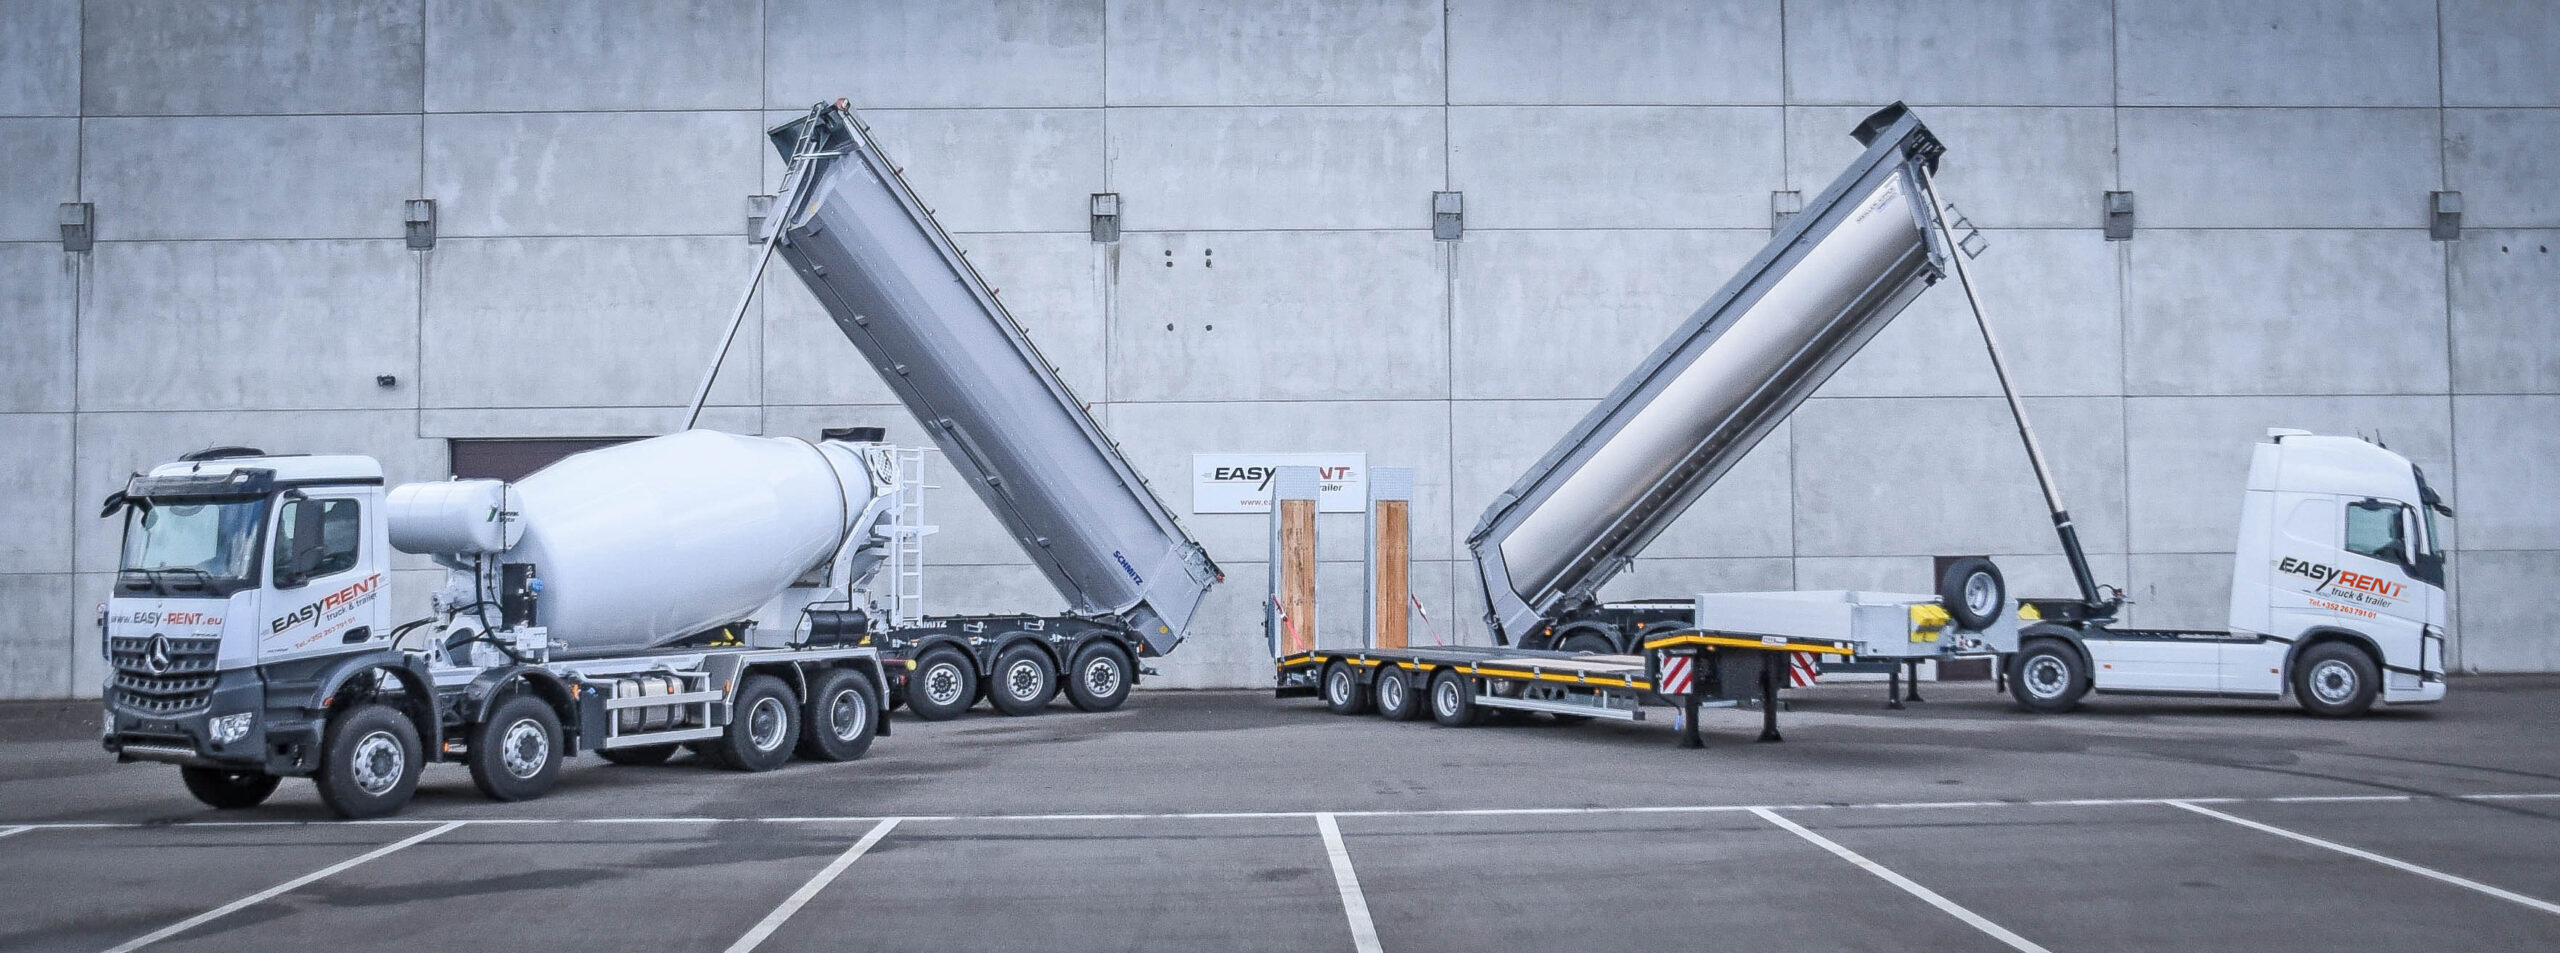 EASY RENT truck & trailer pour la première fois à MATEXPO Kortrijk